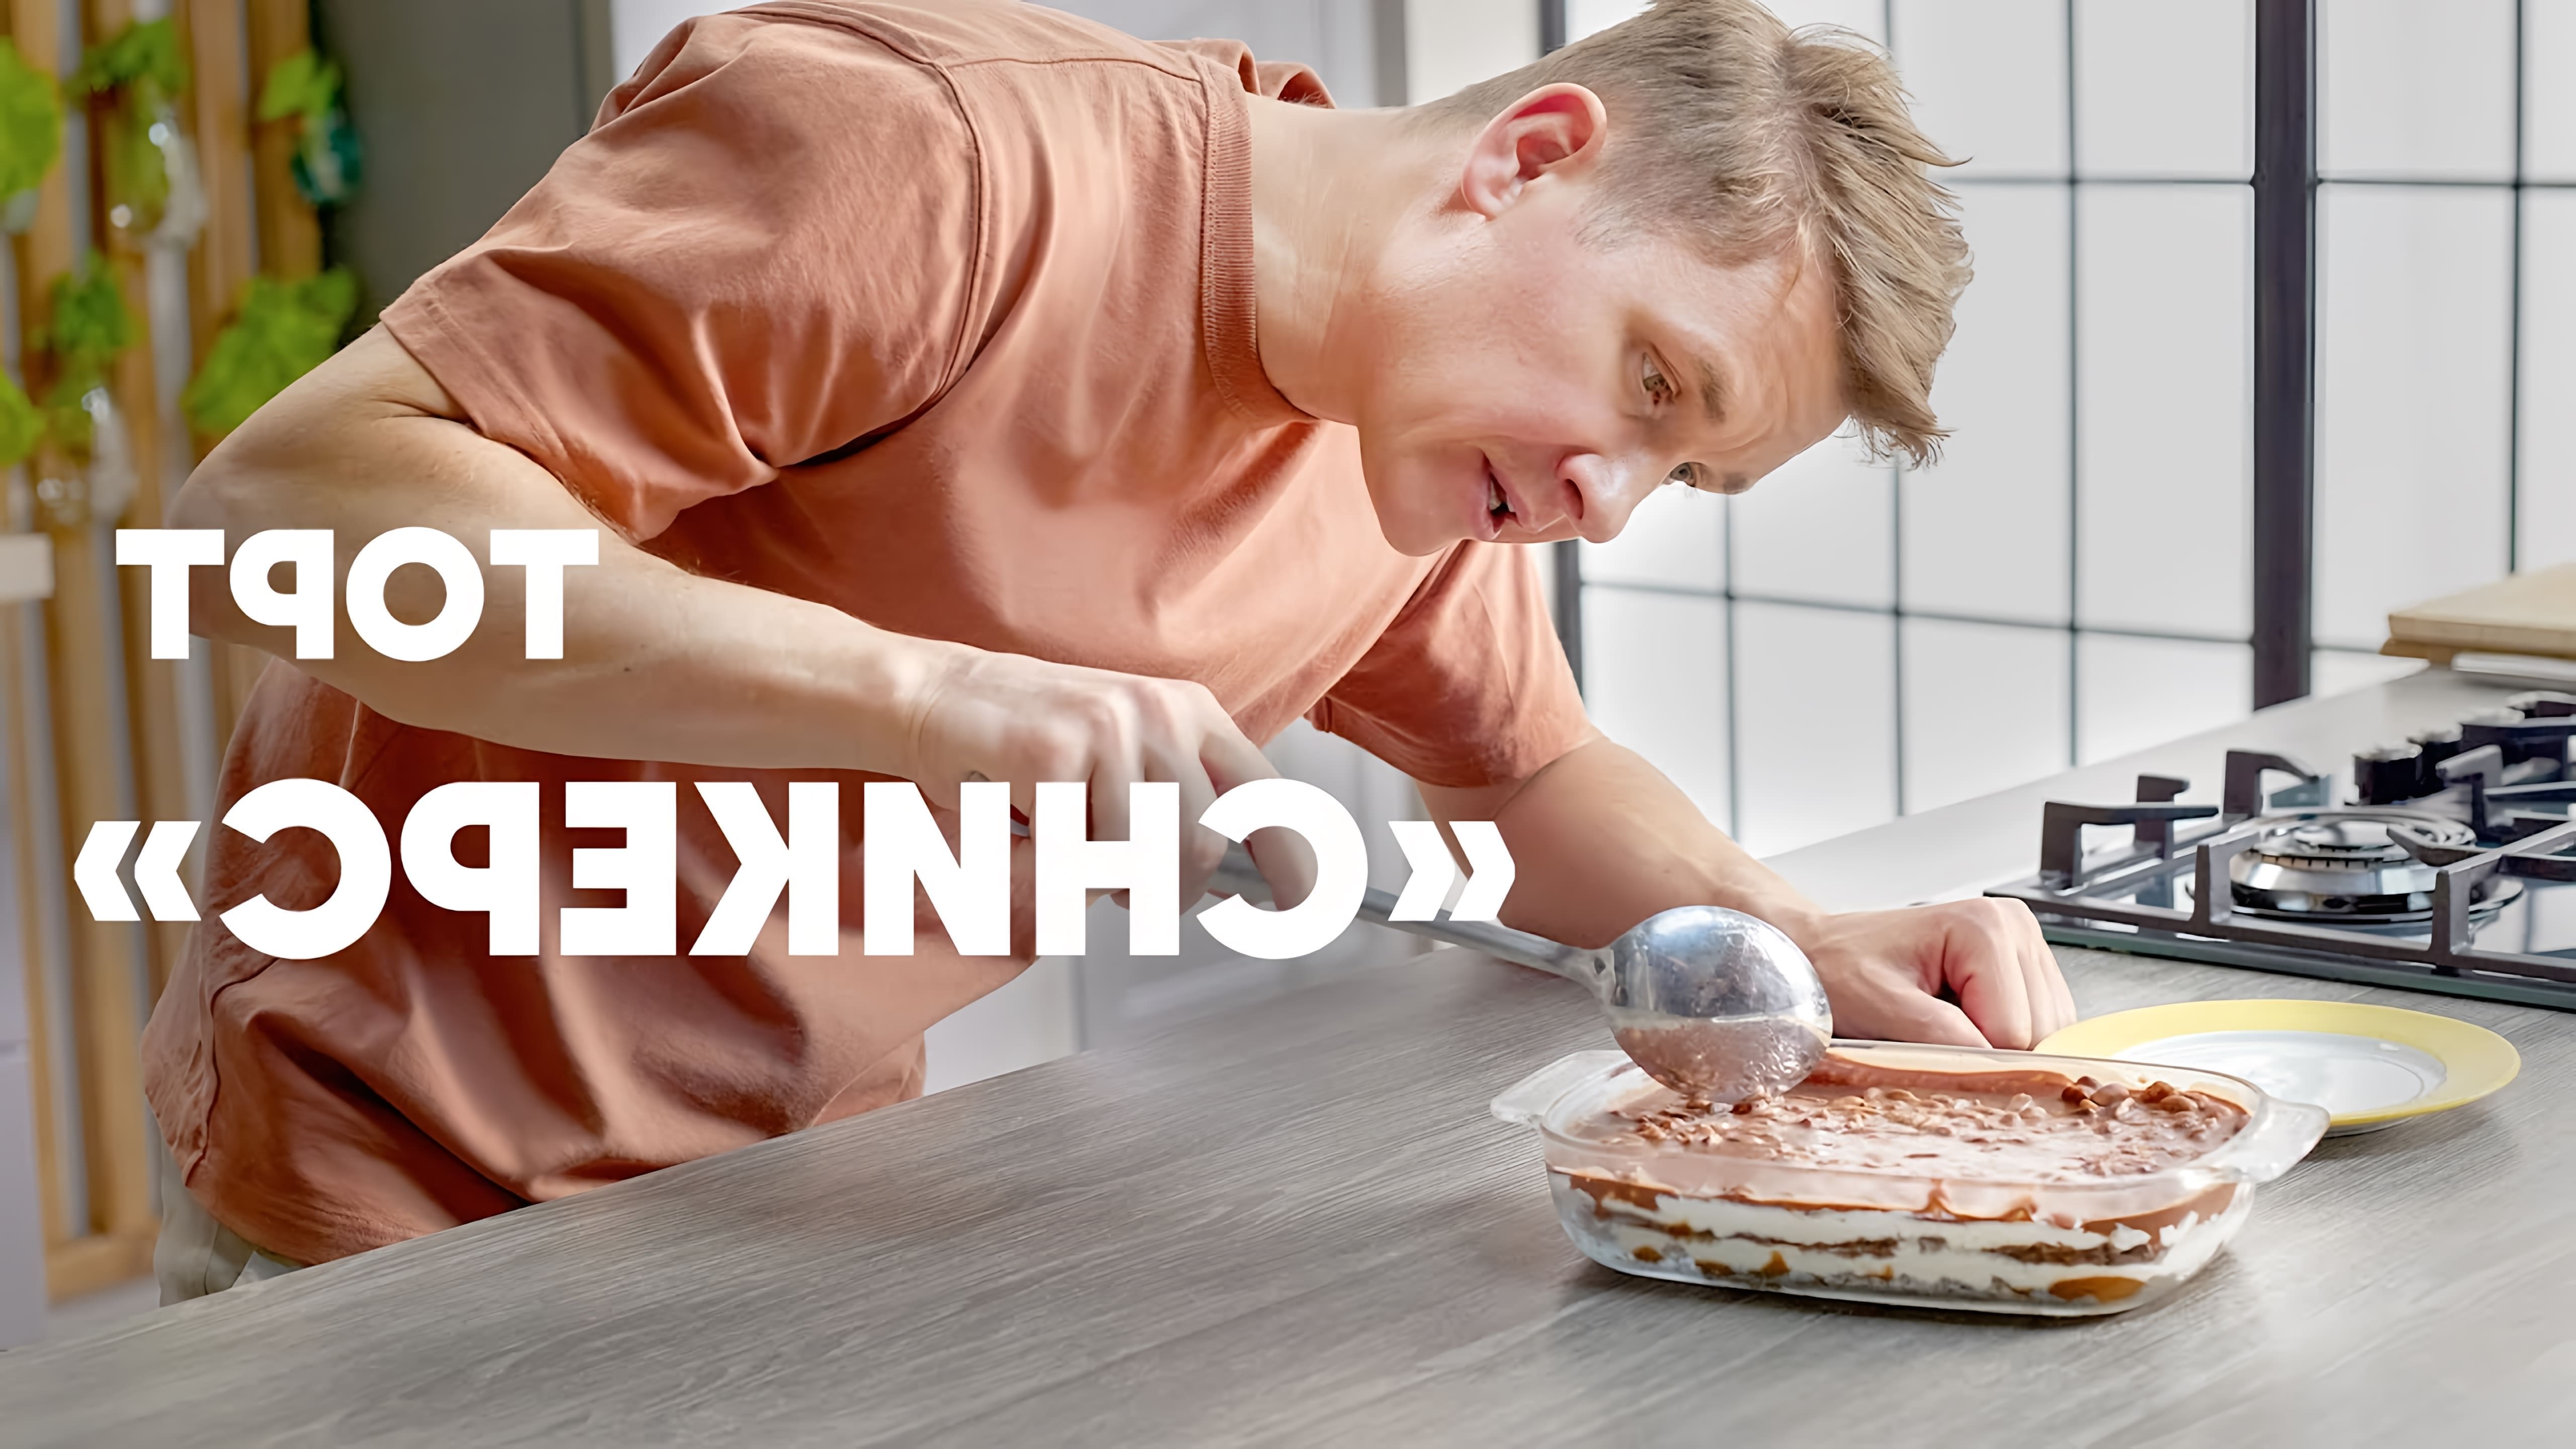 В этом видео шеф-повар Белькович показывает, как приготовить торт "Сникерс"